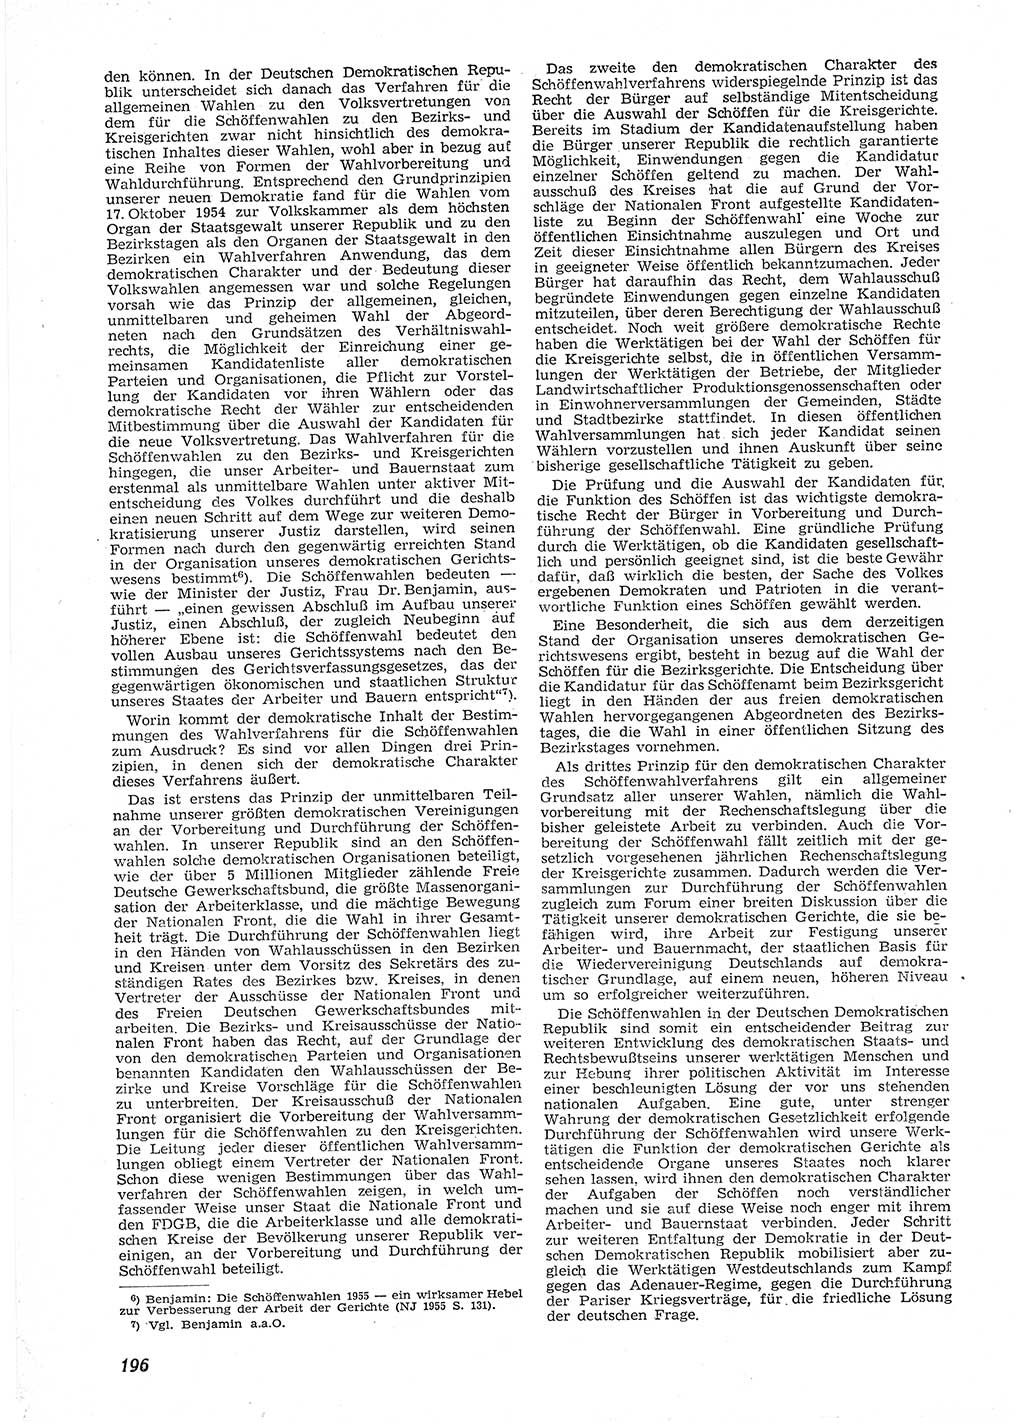 Neue Justiz (NJ), Zeitschrift für Recht und Rechtswissenschaft [Deutsche Demokratische Republik (DDR)], 9. Jahrgang 1955, Seite 196 (NJ DDR 1955, S. 196)